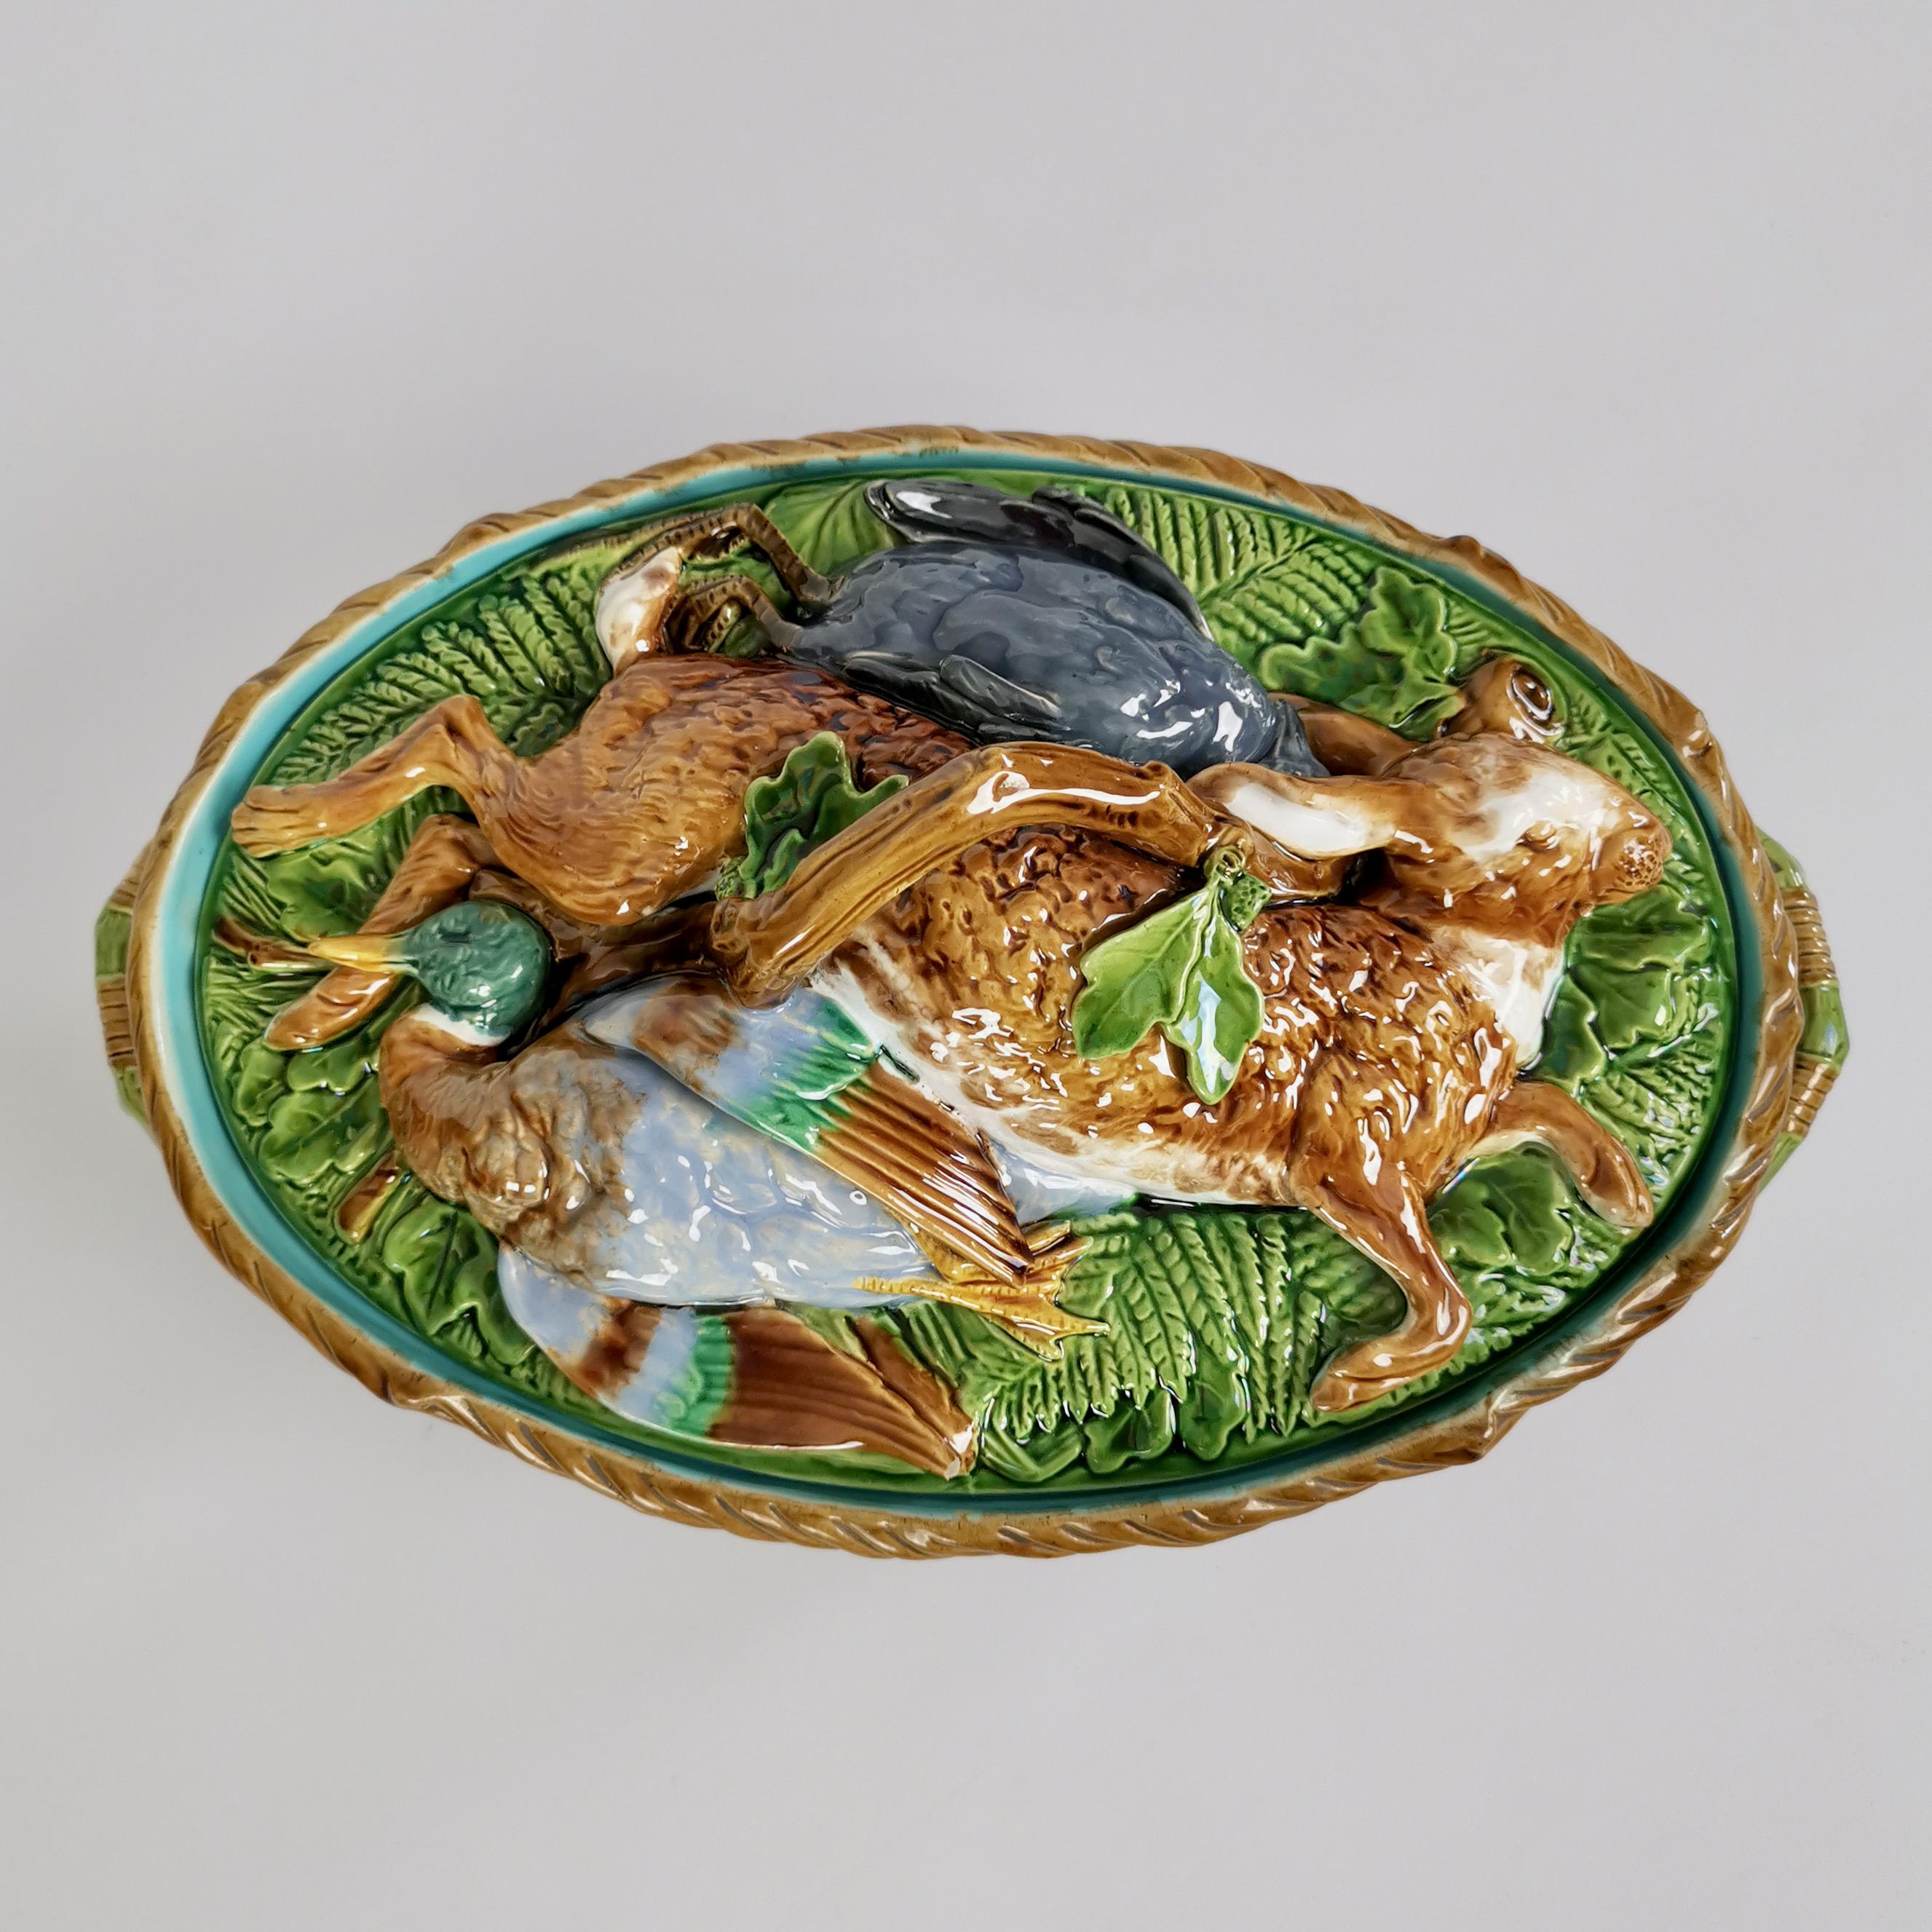 Il s'agit d'une étonnante soupière à tarte avec couvercle fabriquée par Minton en 1881. La pièce est fabriquée en majolique et présente sur le couvercle un gibier moulé en relief de façon réaliste : un lapin, un colvert et un pigeon.
 
Cette